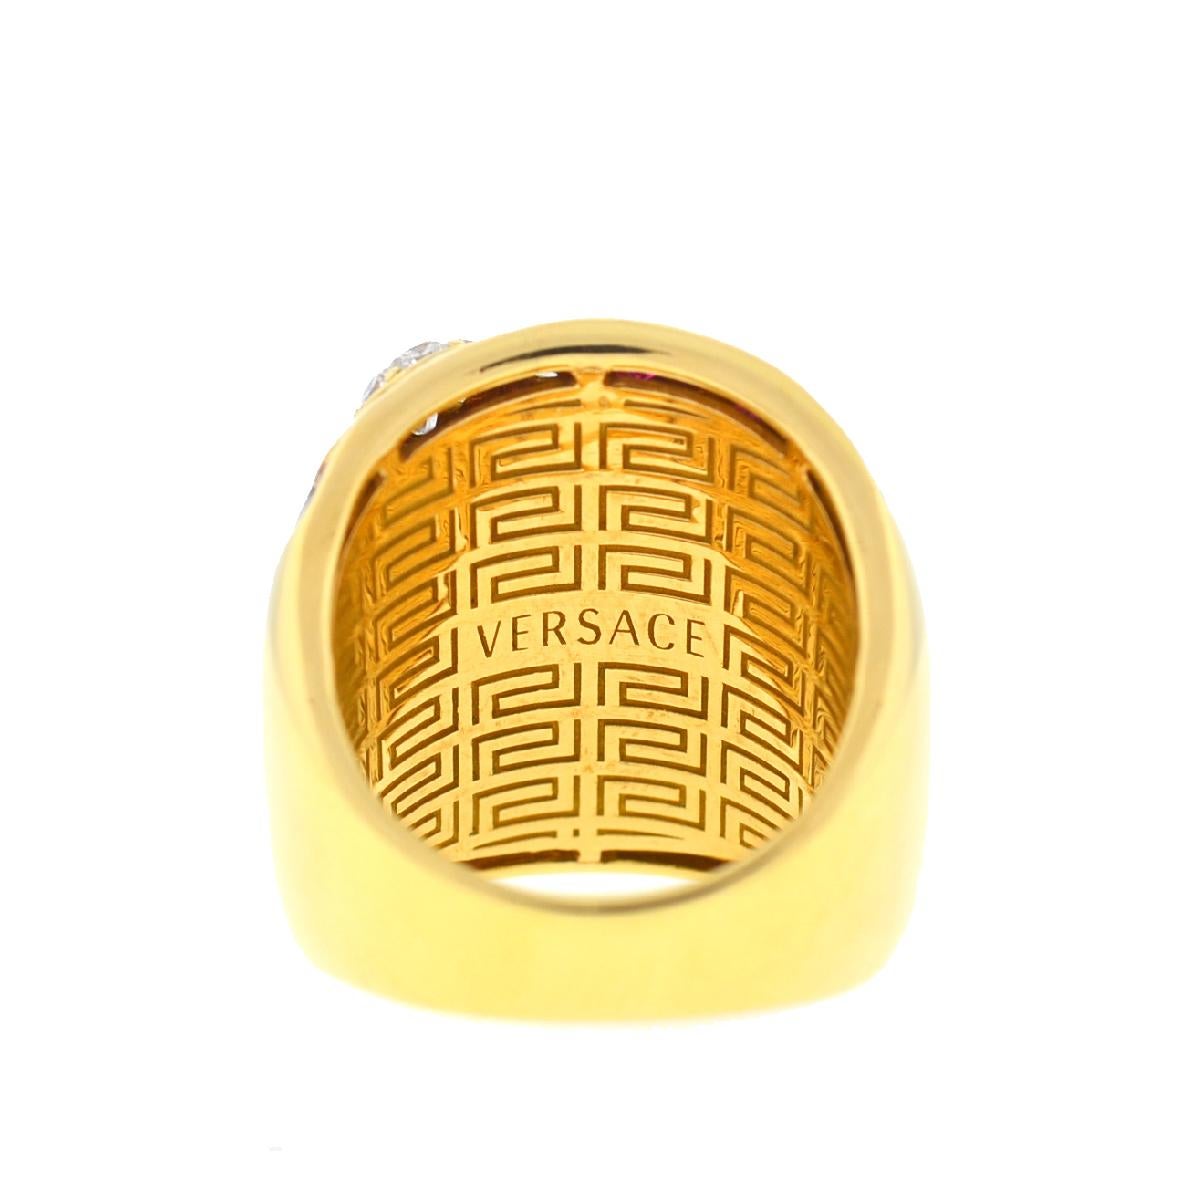 18 karat gold versace ring